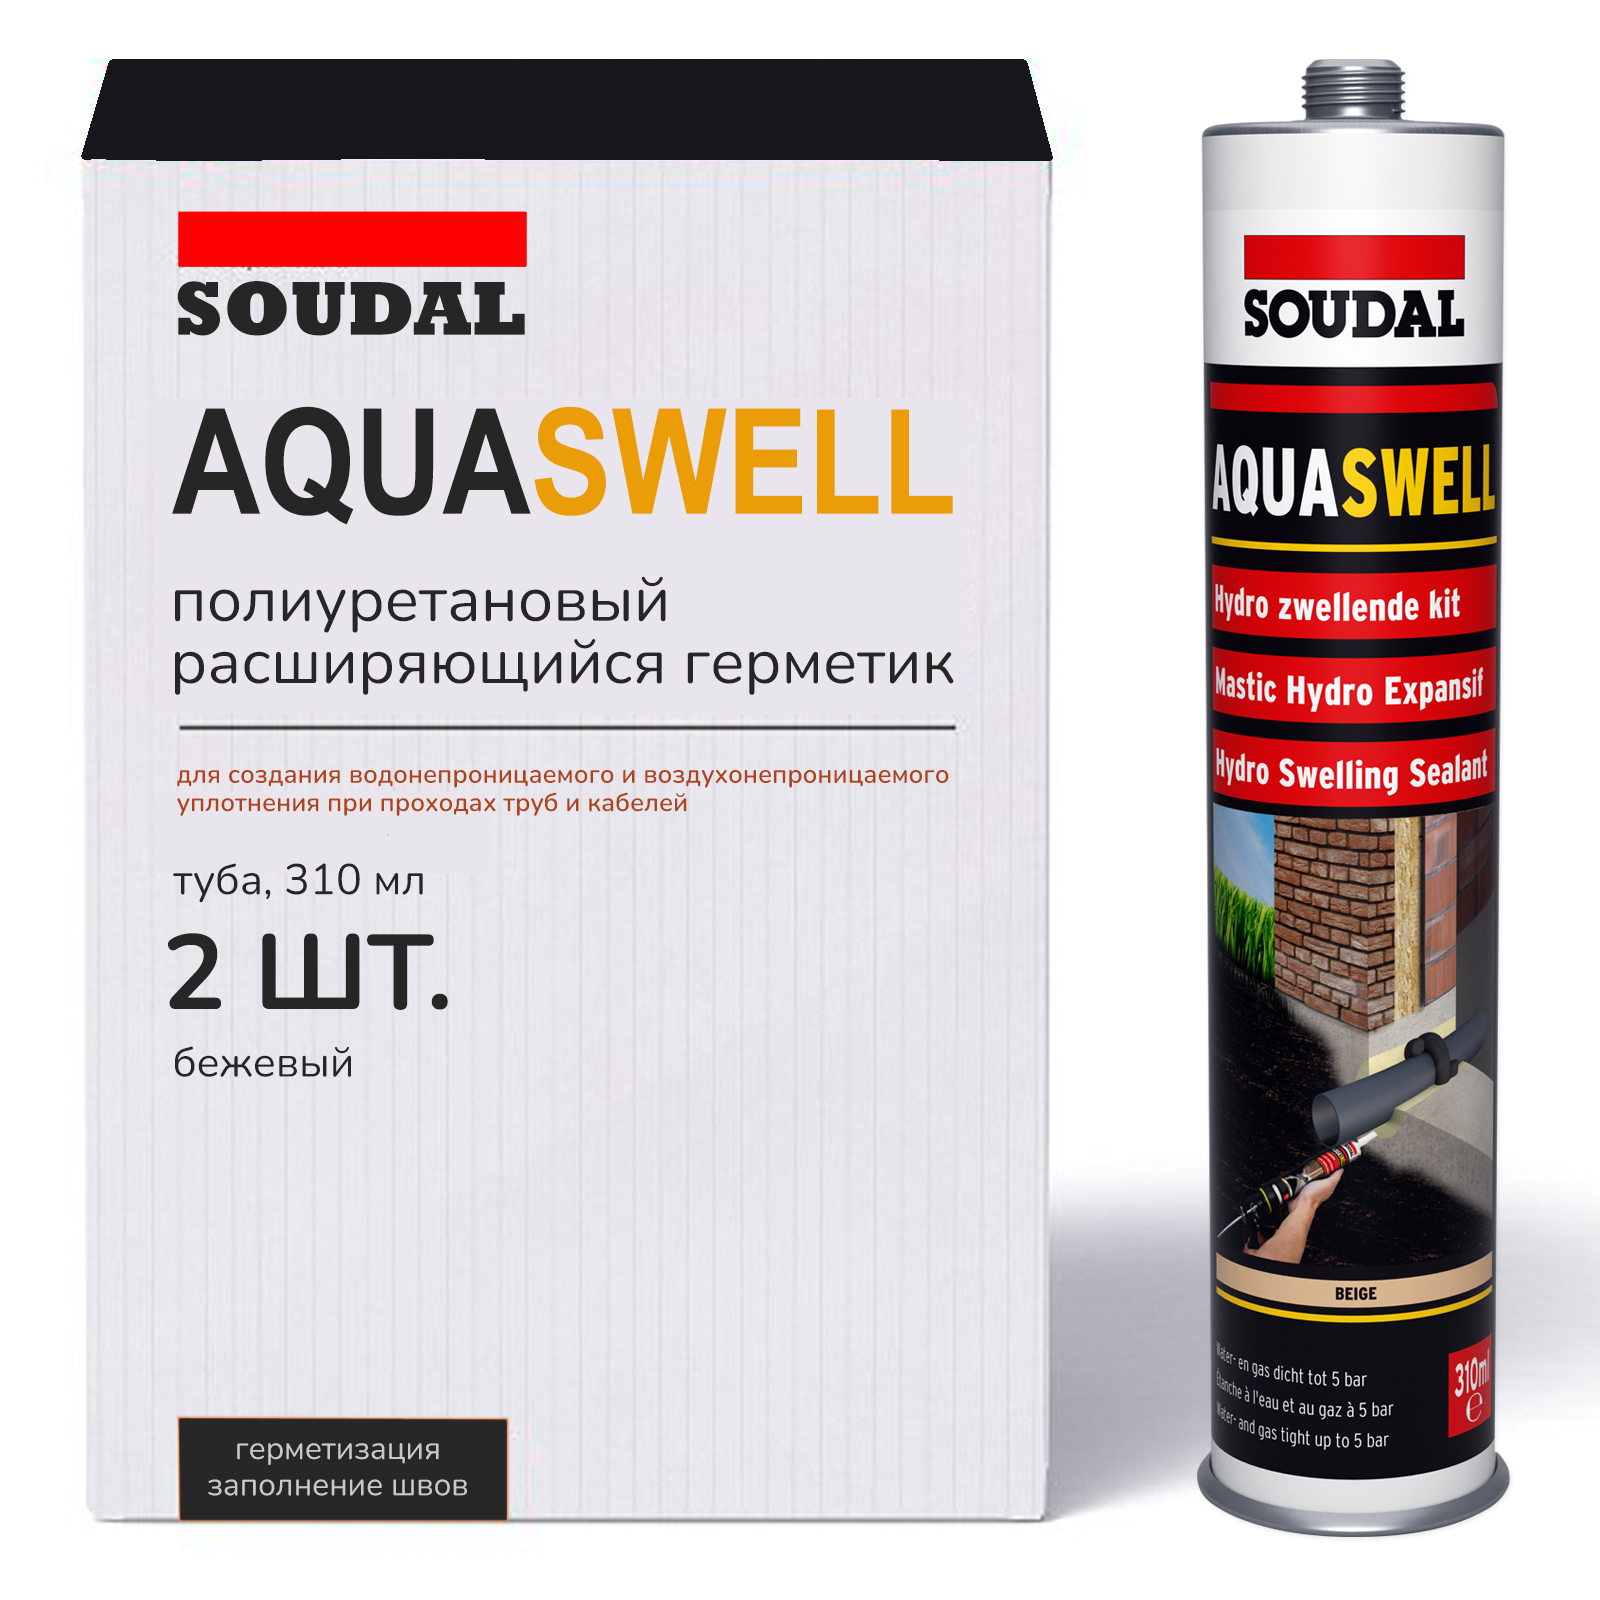 Soudal Aquaswell